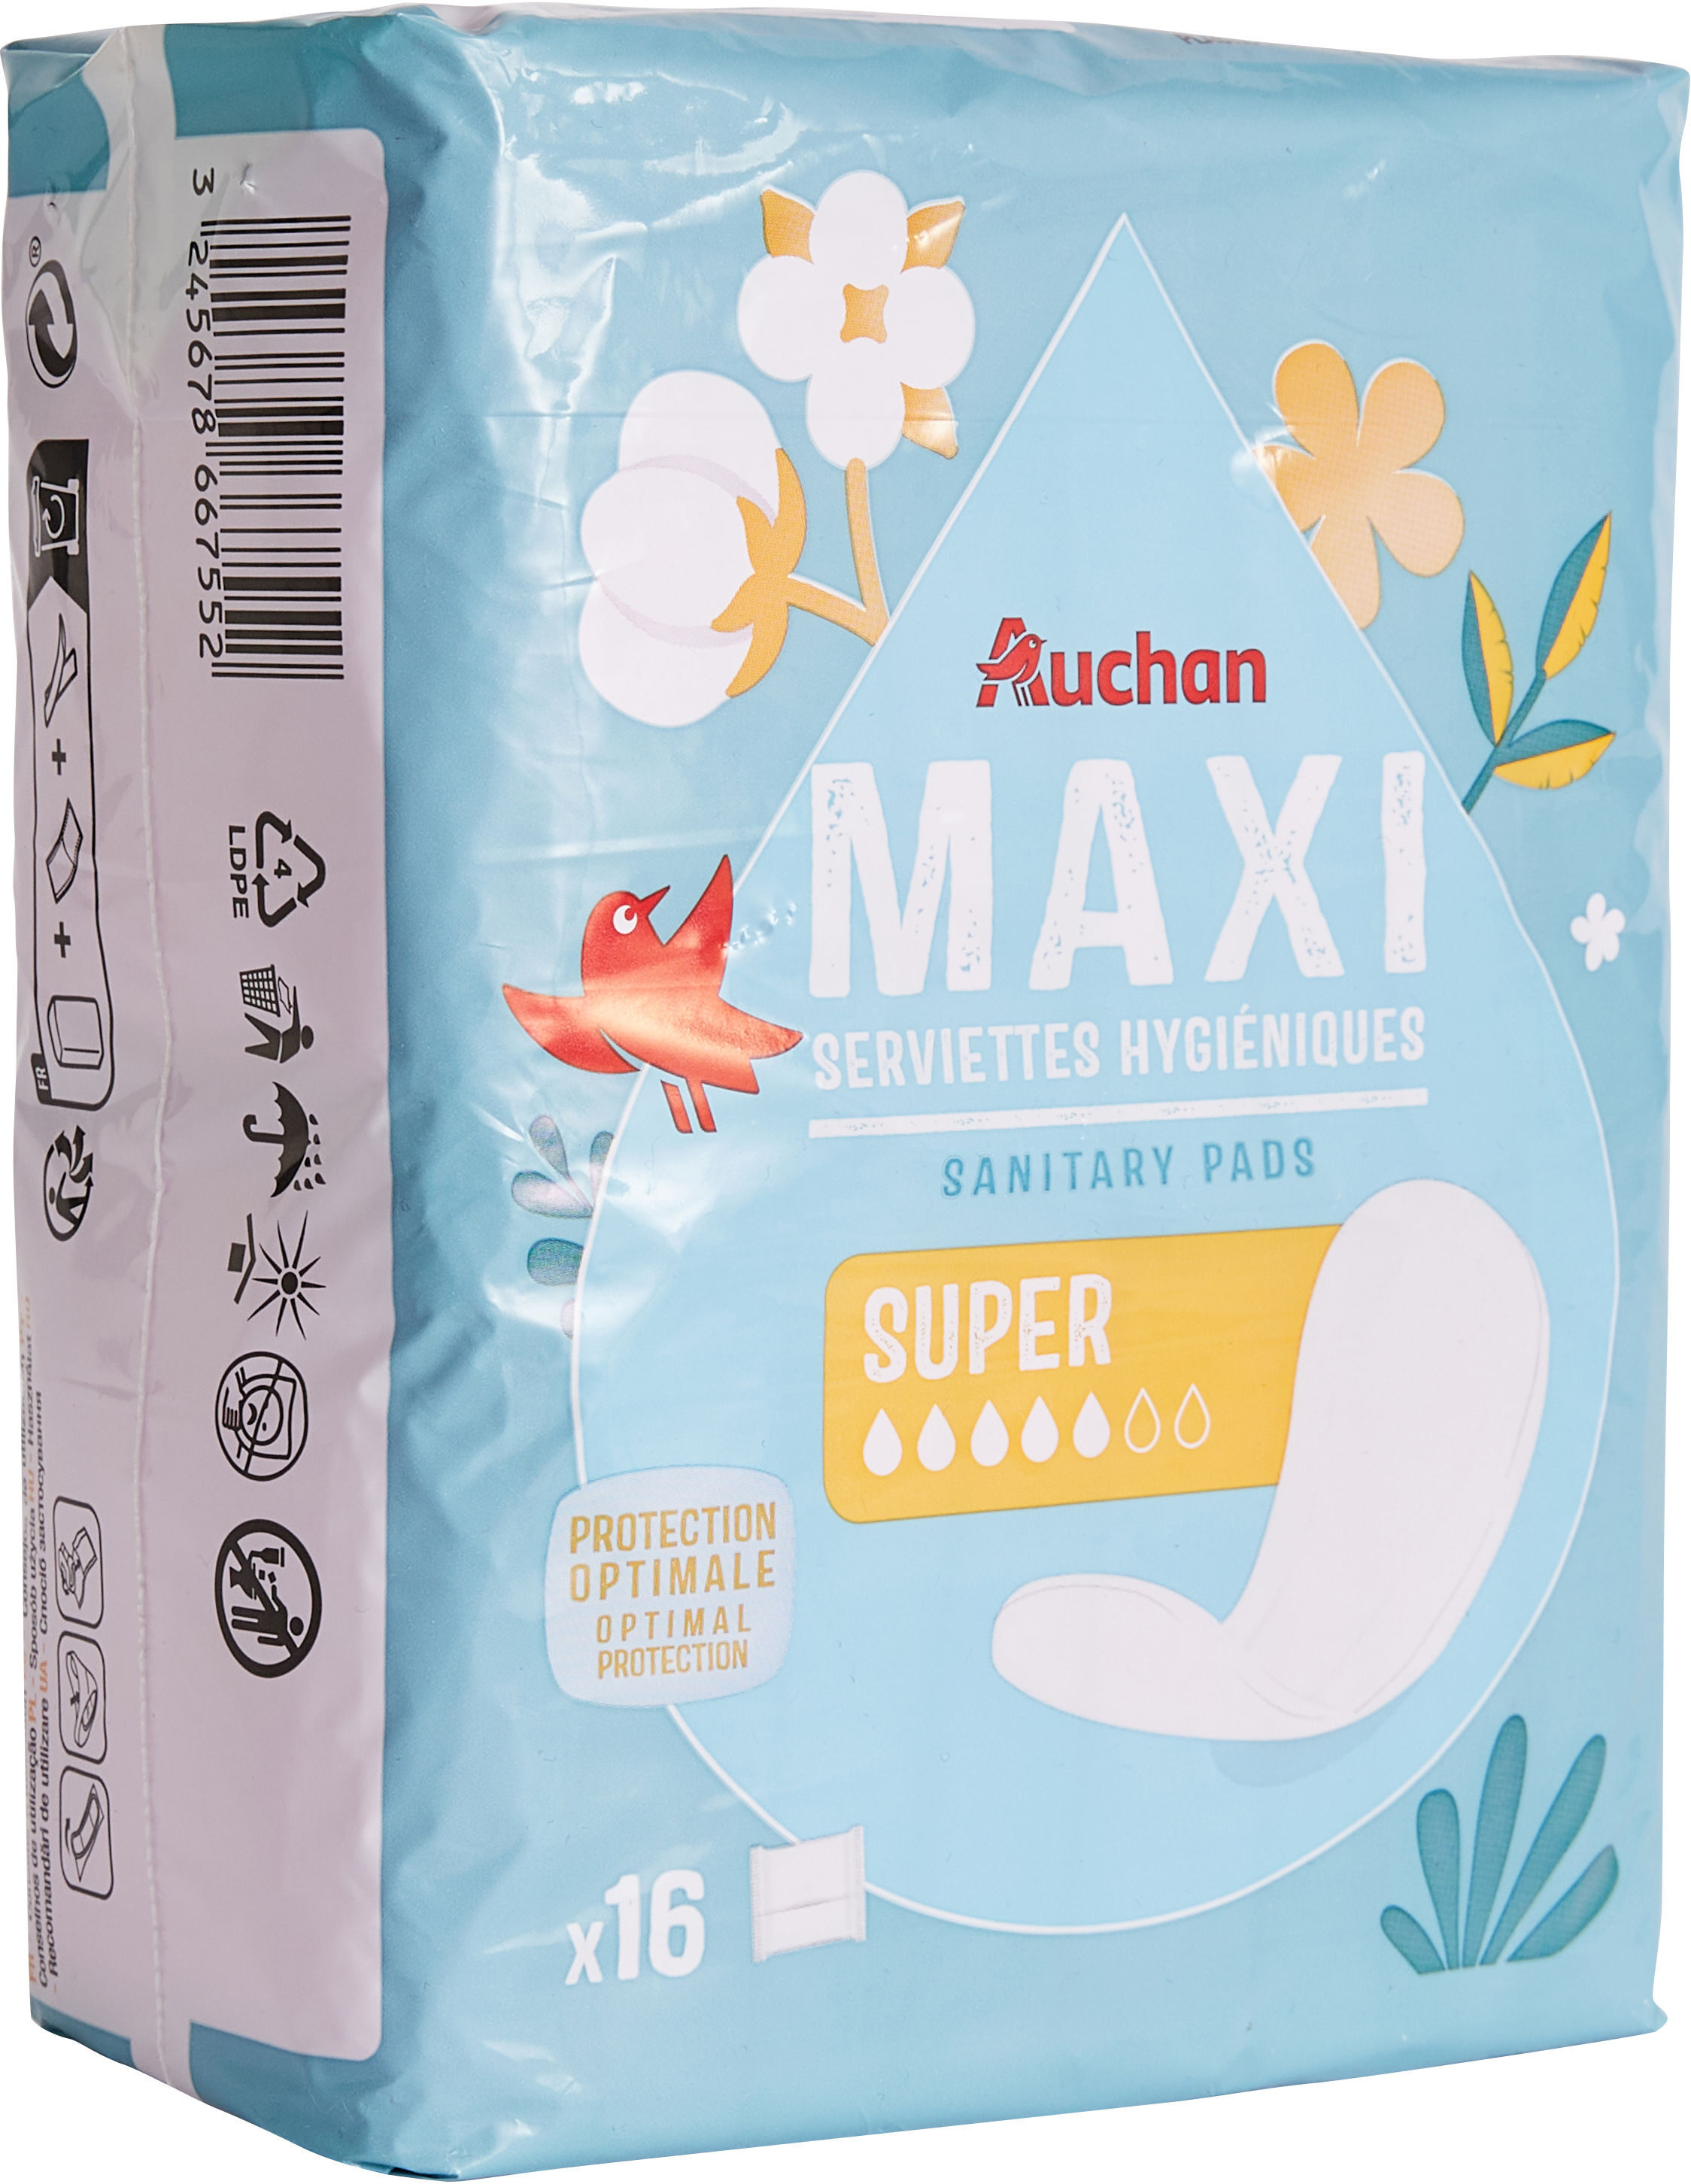 Serviettes hygiéniques Maxi Super x16 - Produit - fr